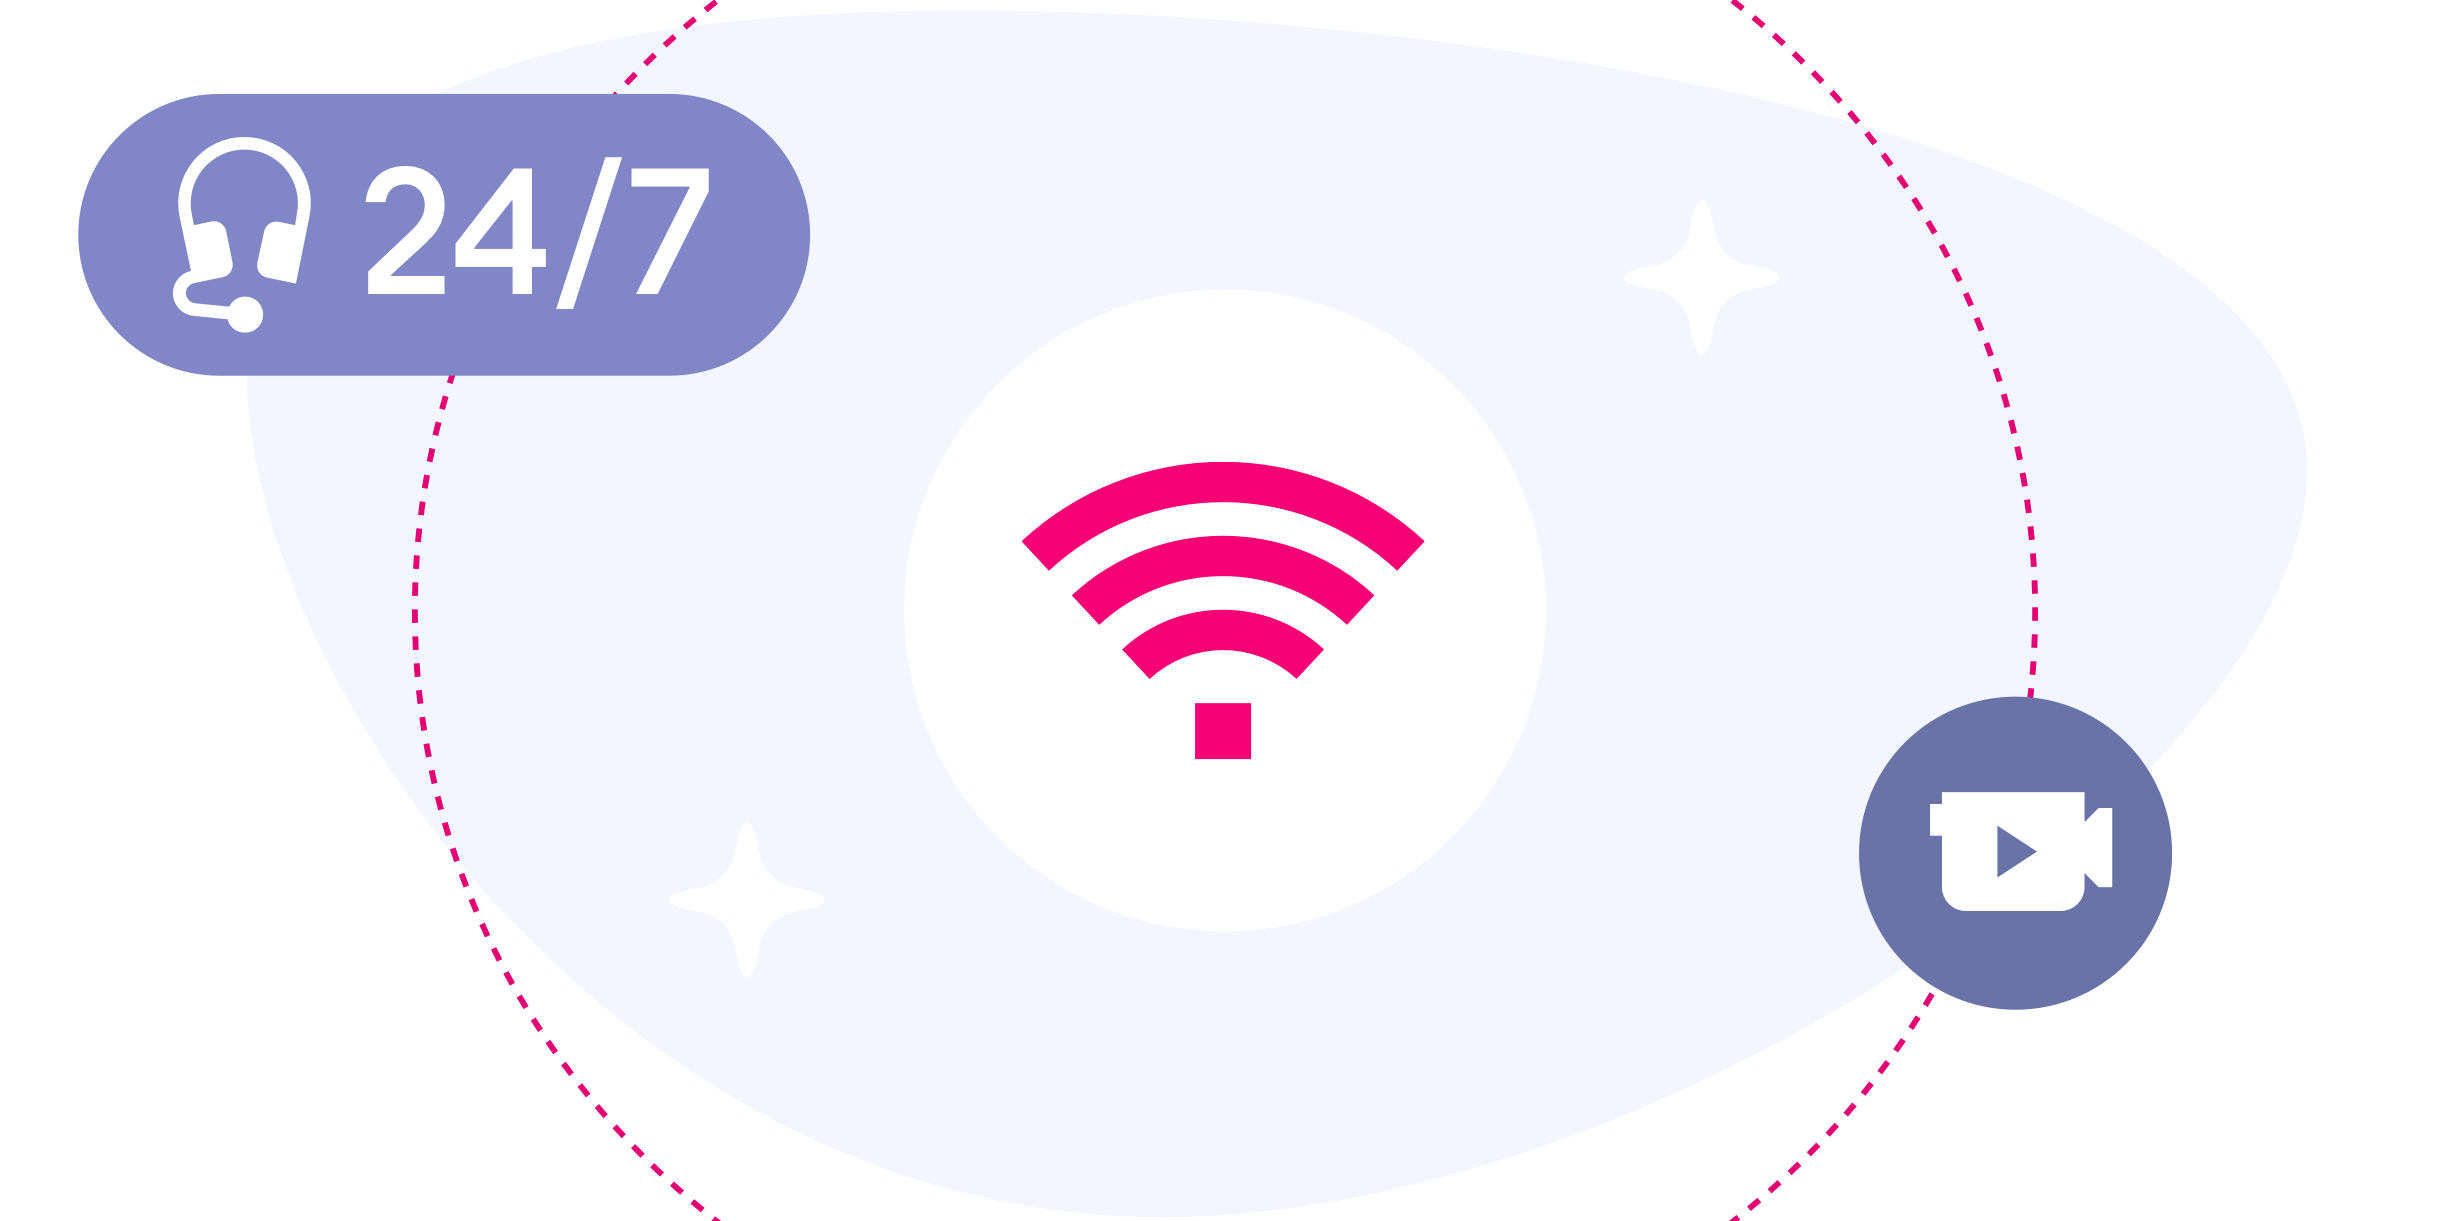 Grafik mit WLAN Zeichen symbolisch für 24/7 Support durch Telekom-Experten